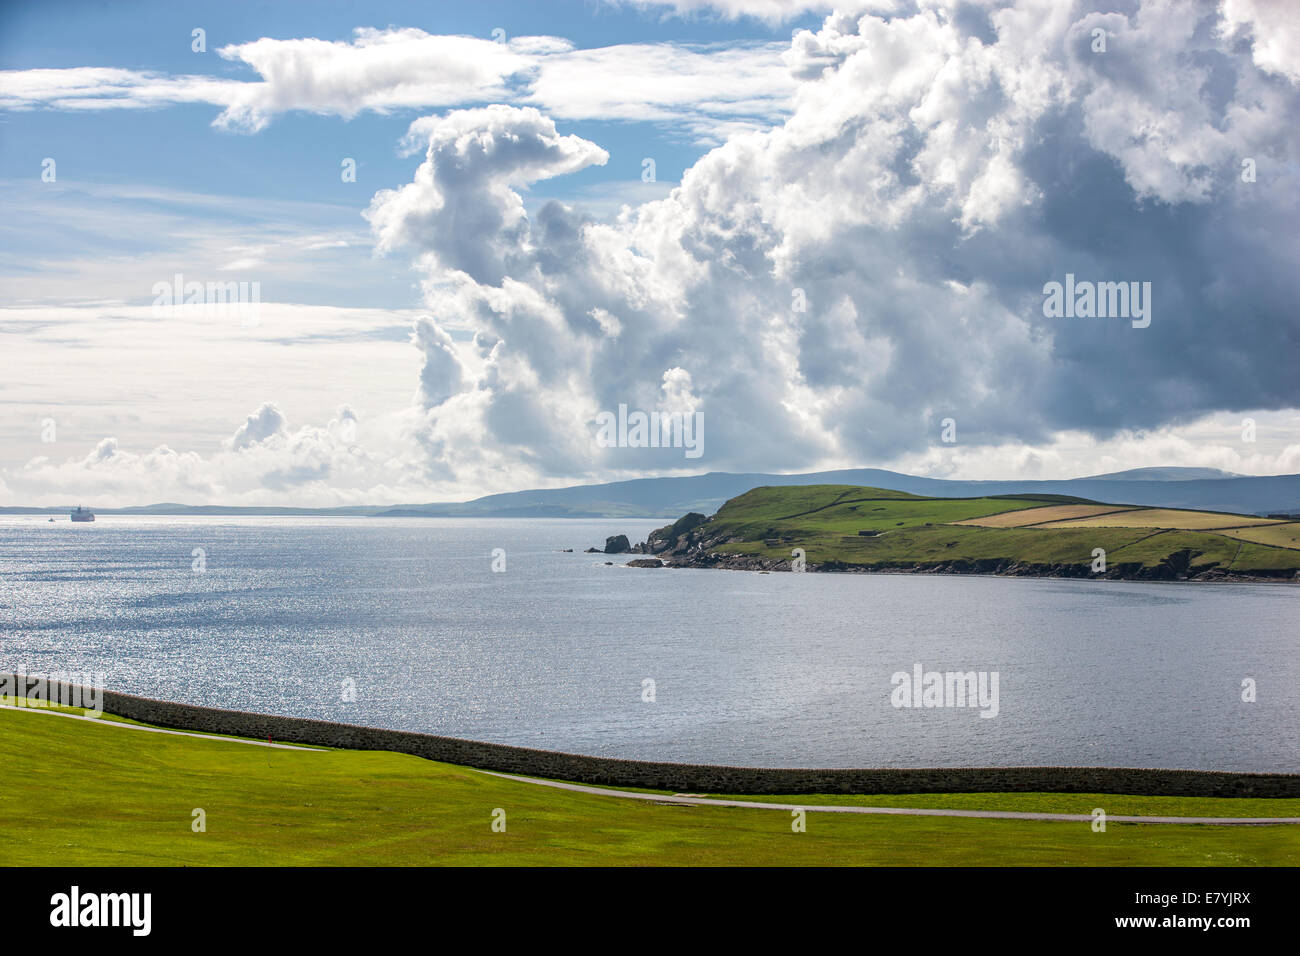 Magnifique paysage de l'île continentale sur les îles Shetland, en Écosse. Vue d'un terrain de golf à Lerwick Banque D'Images